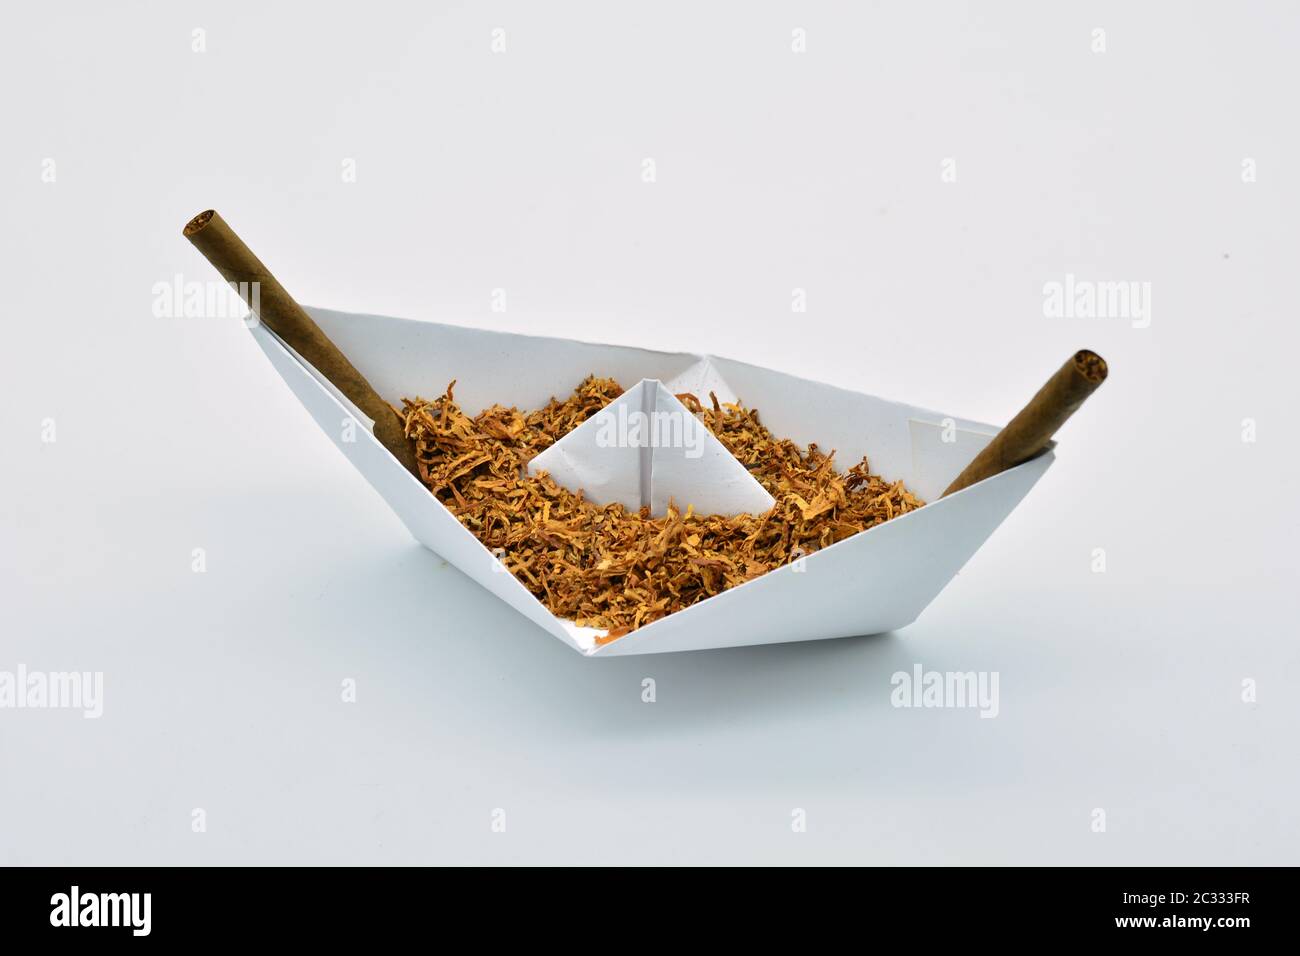 Barco de papel cargado de tabaco sobre fondo blanco Stock Photo